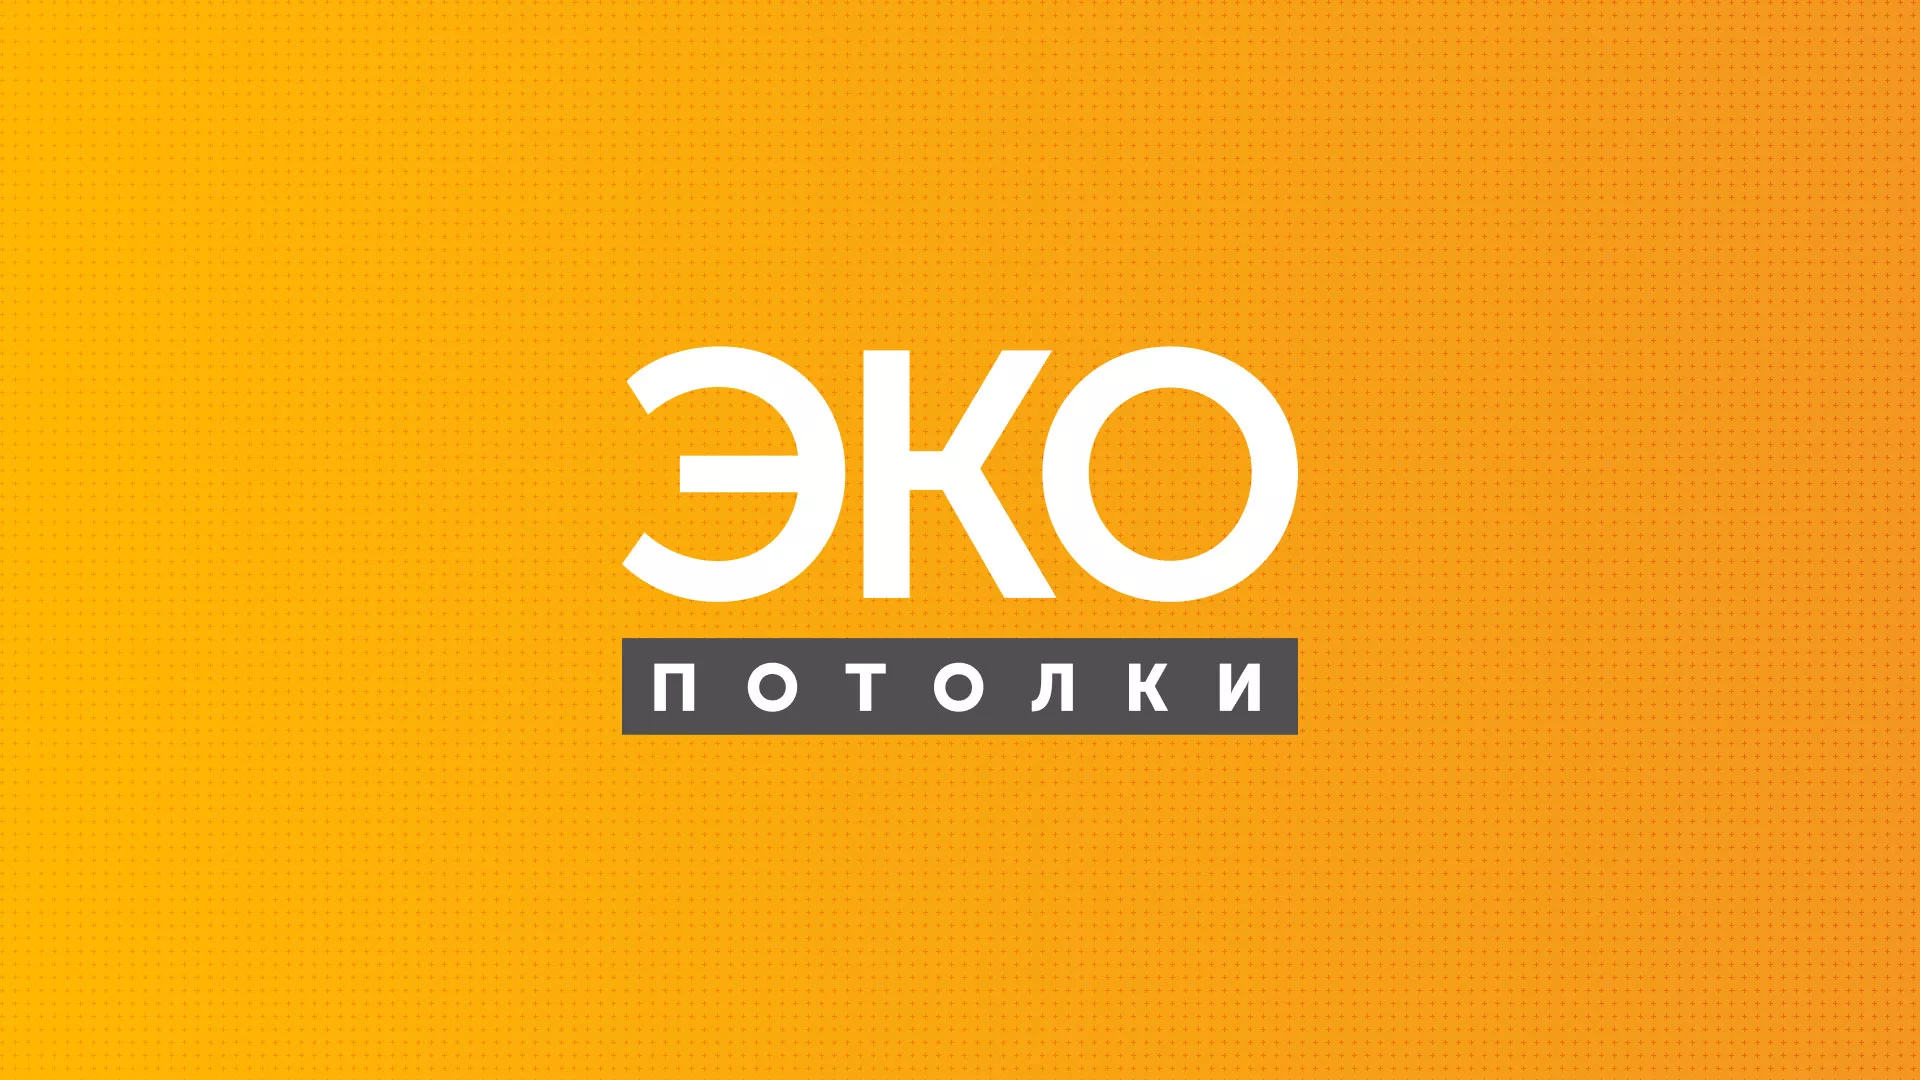 Разработка сайта по натяжным потолкам «Эко Потолки» в Гаджиево